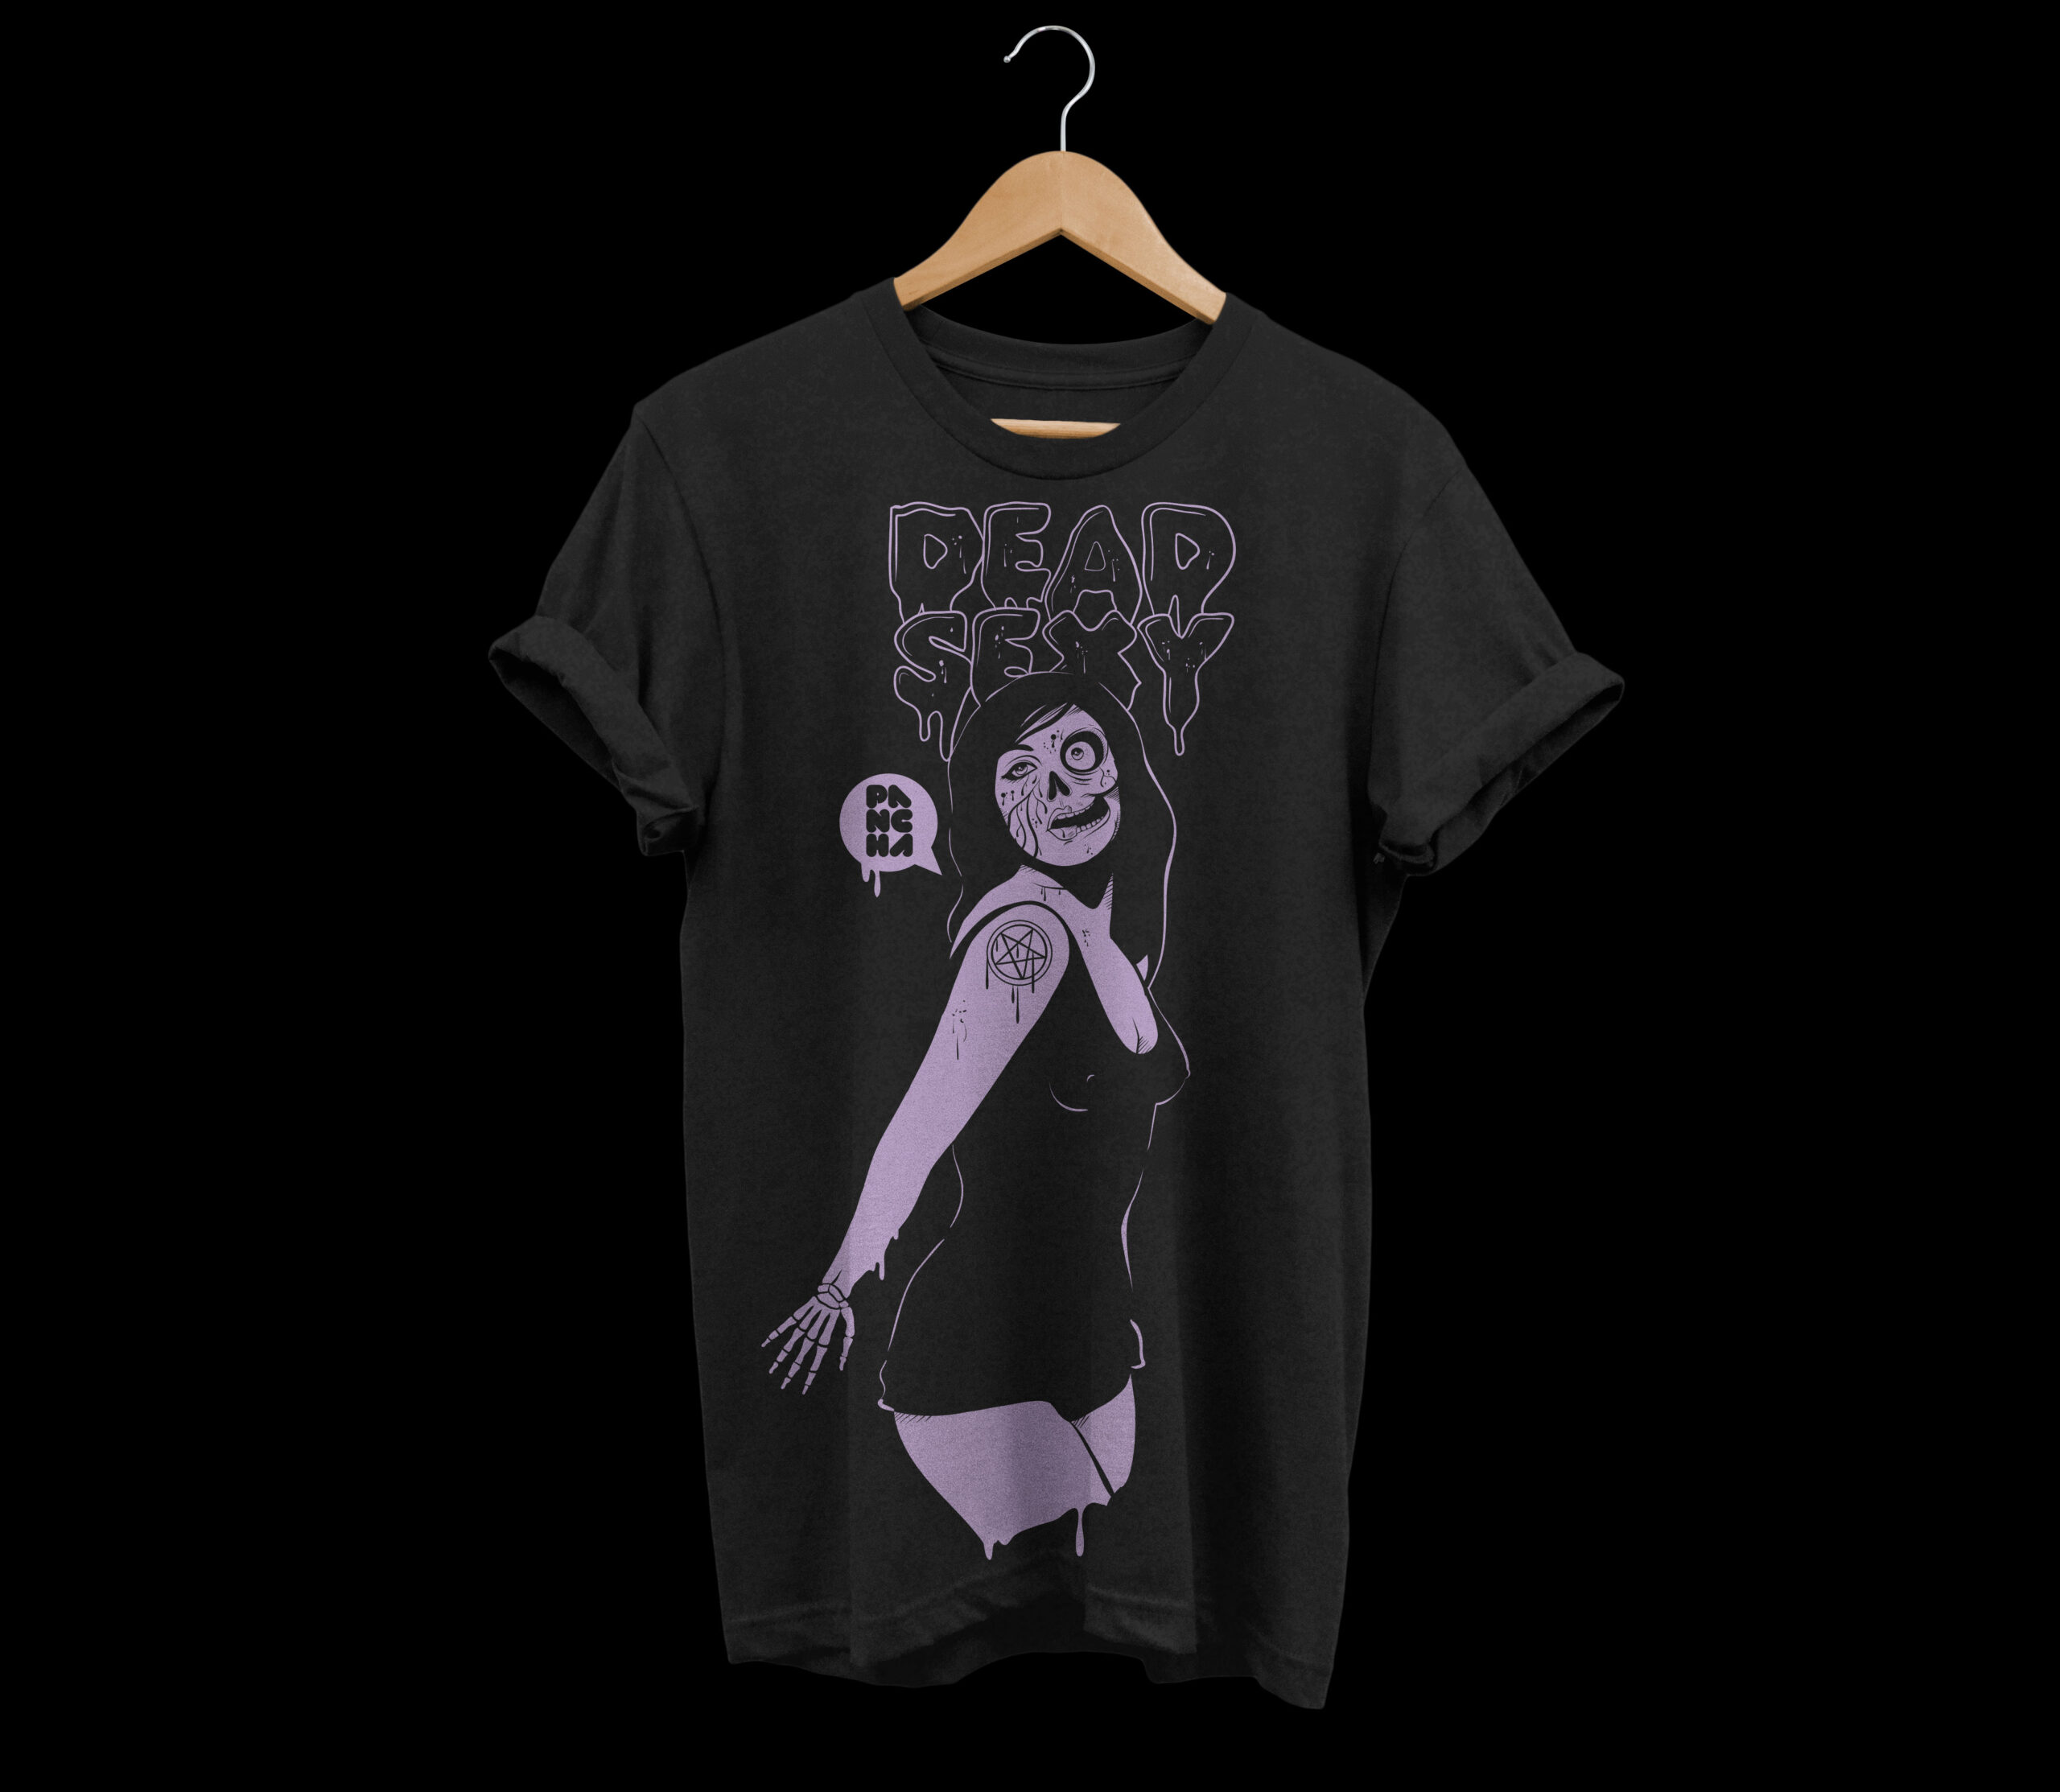 T-shirt design Dead Sexy